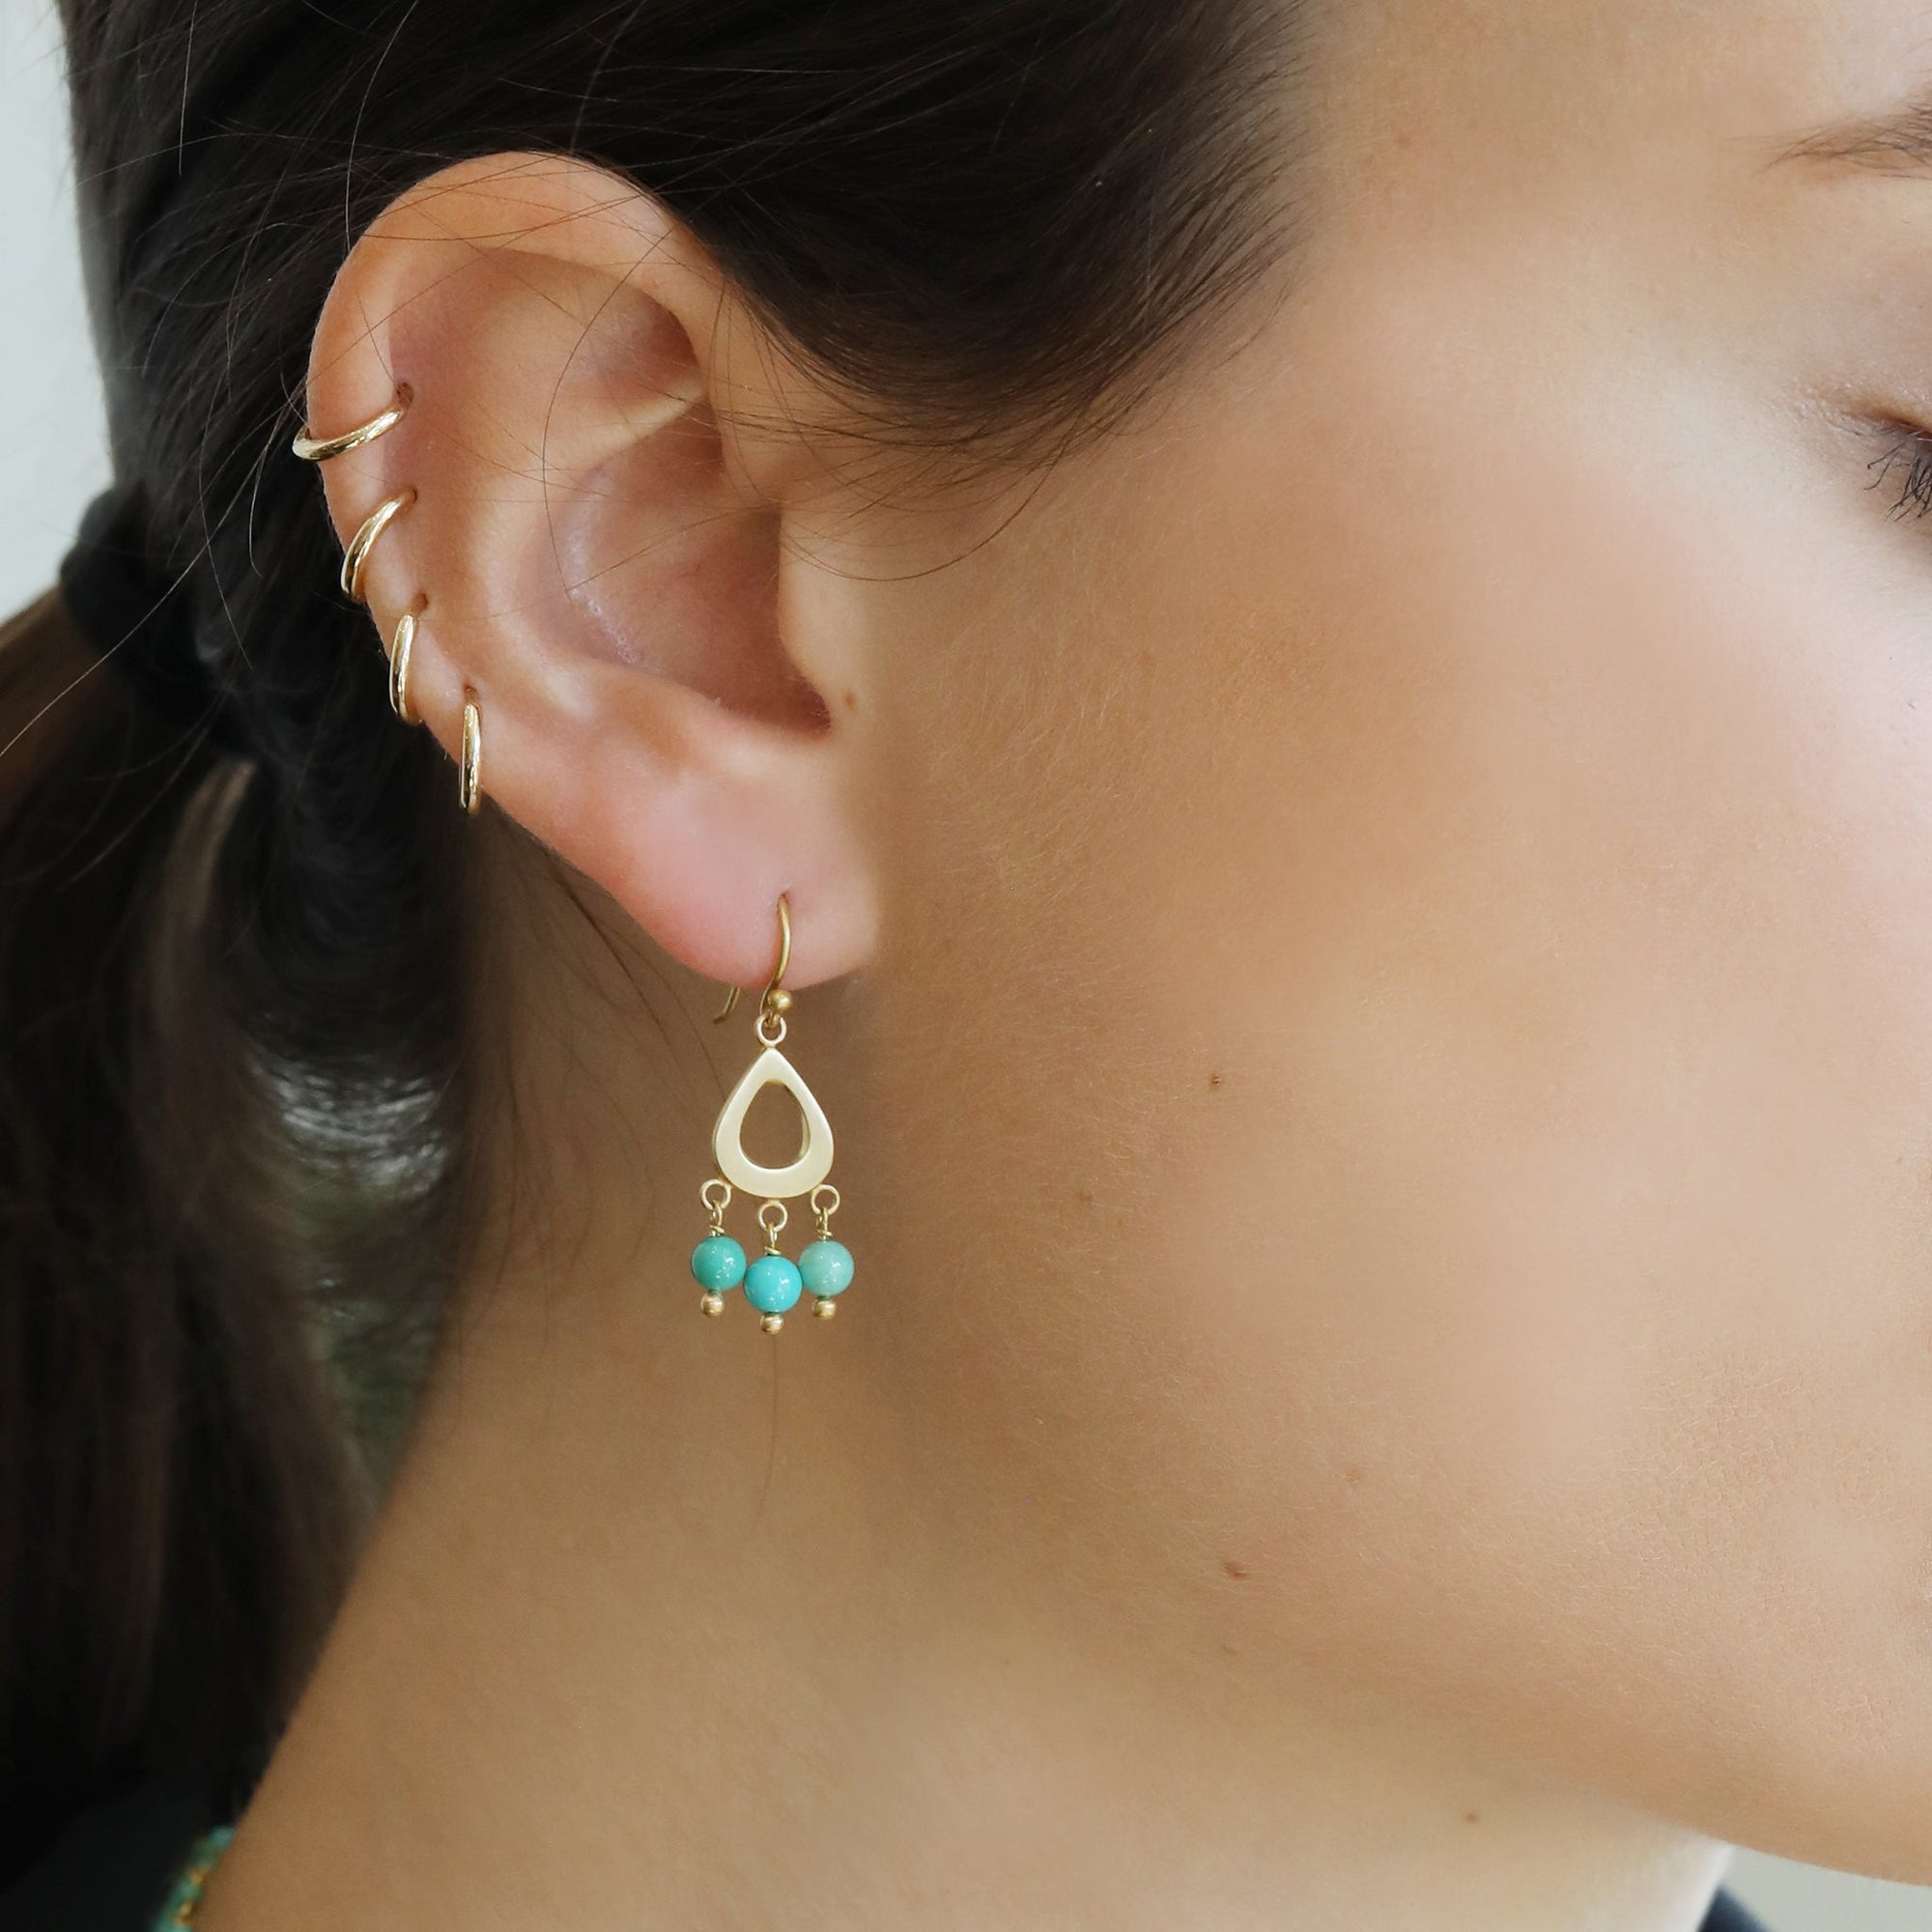 20K Gold Small Teardrop Earrings with Dangling Turquoise - Peridot Fine Jewelry - Caroline Ellen